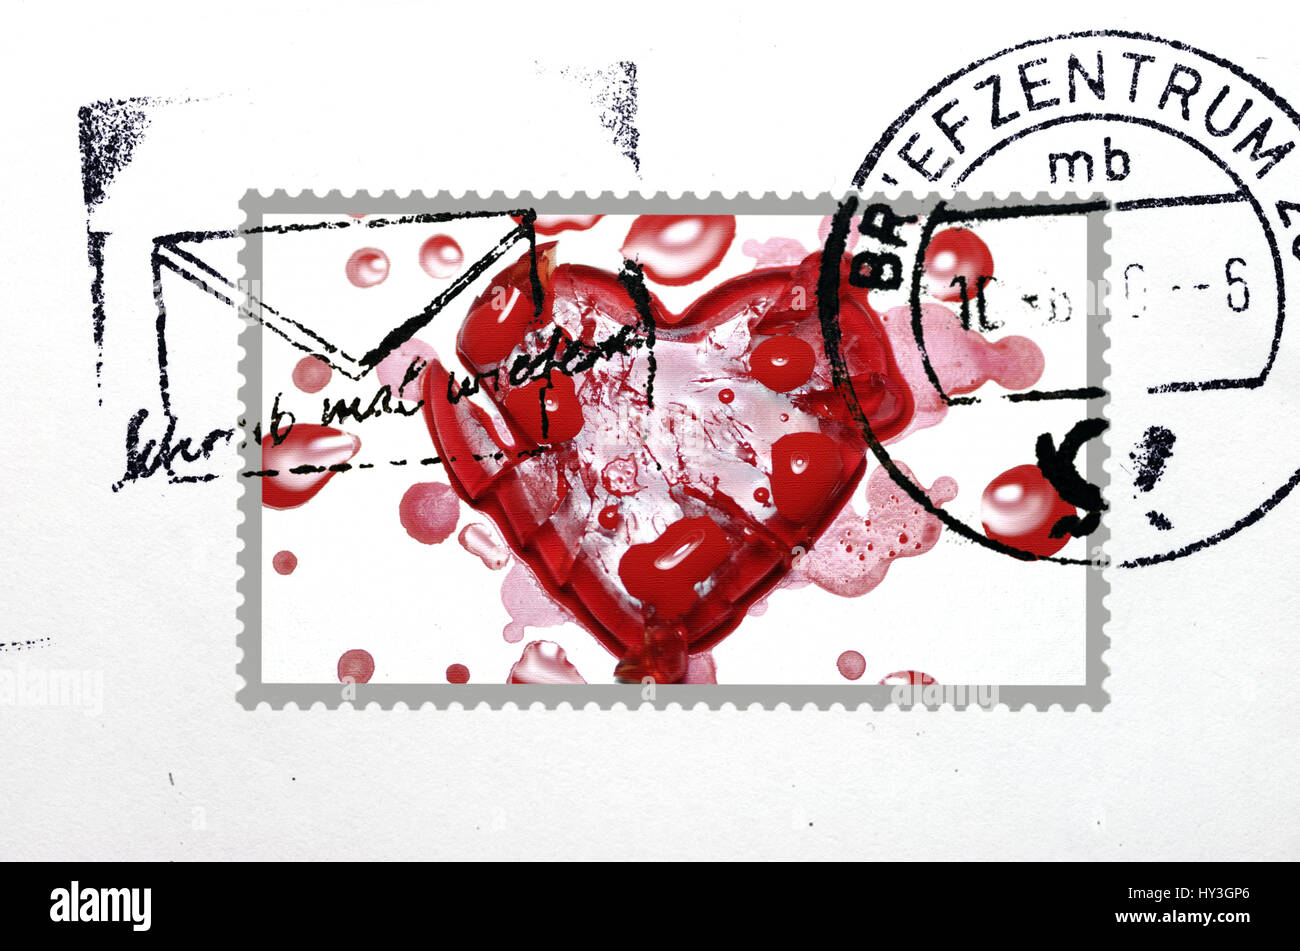 Carta con sello y corazón roto, Breve mit Briefmarke und gebrochenem Herzen Foto de stock